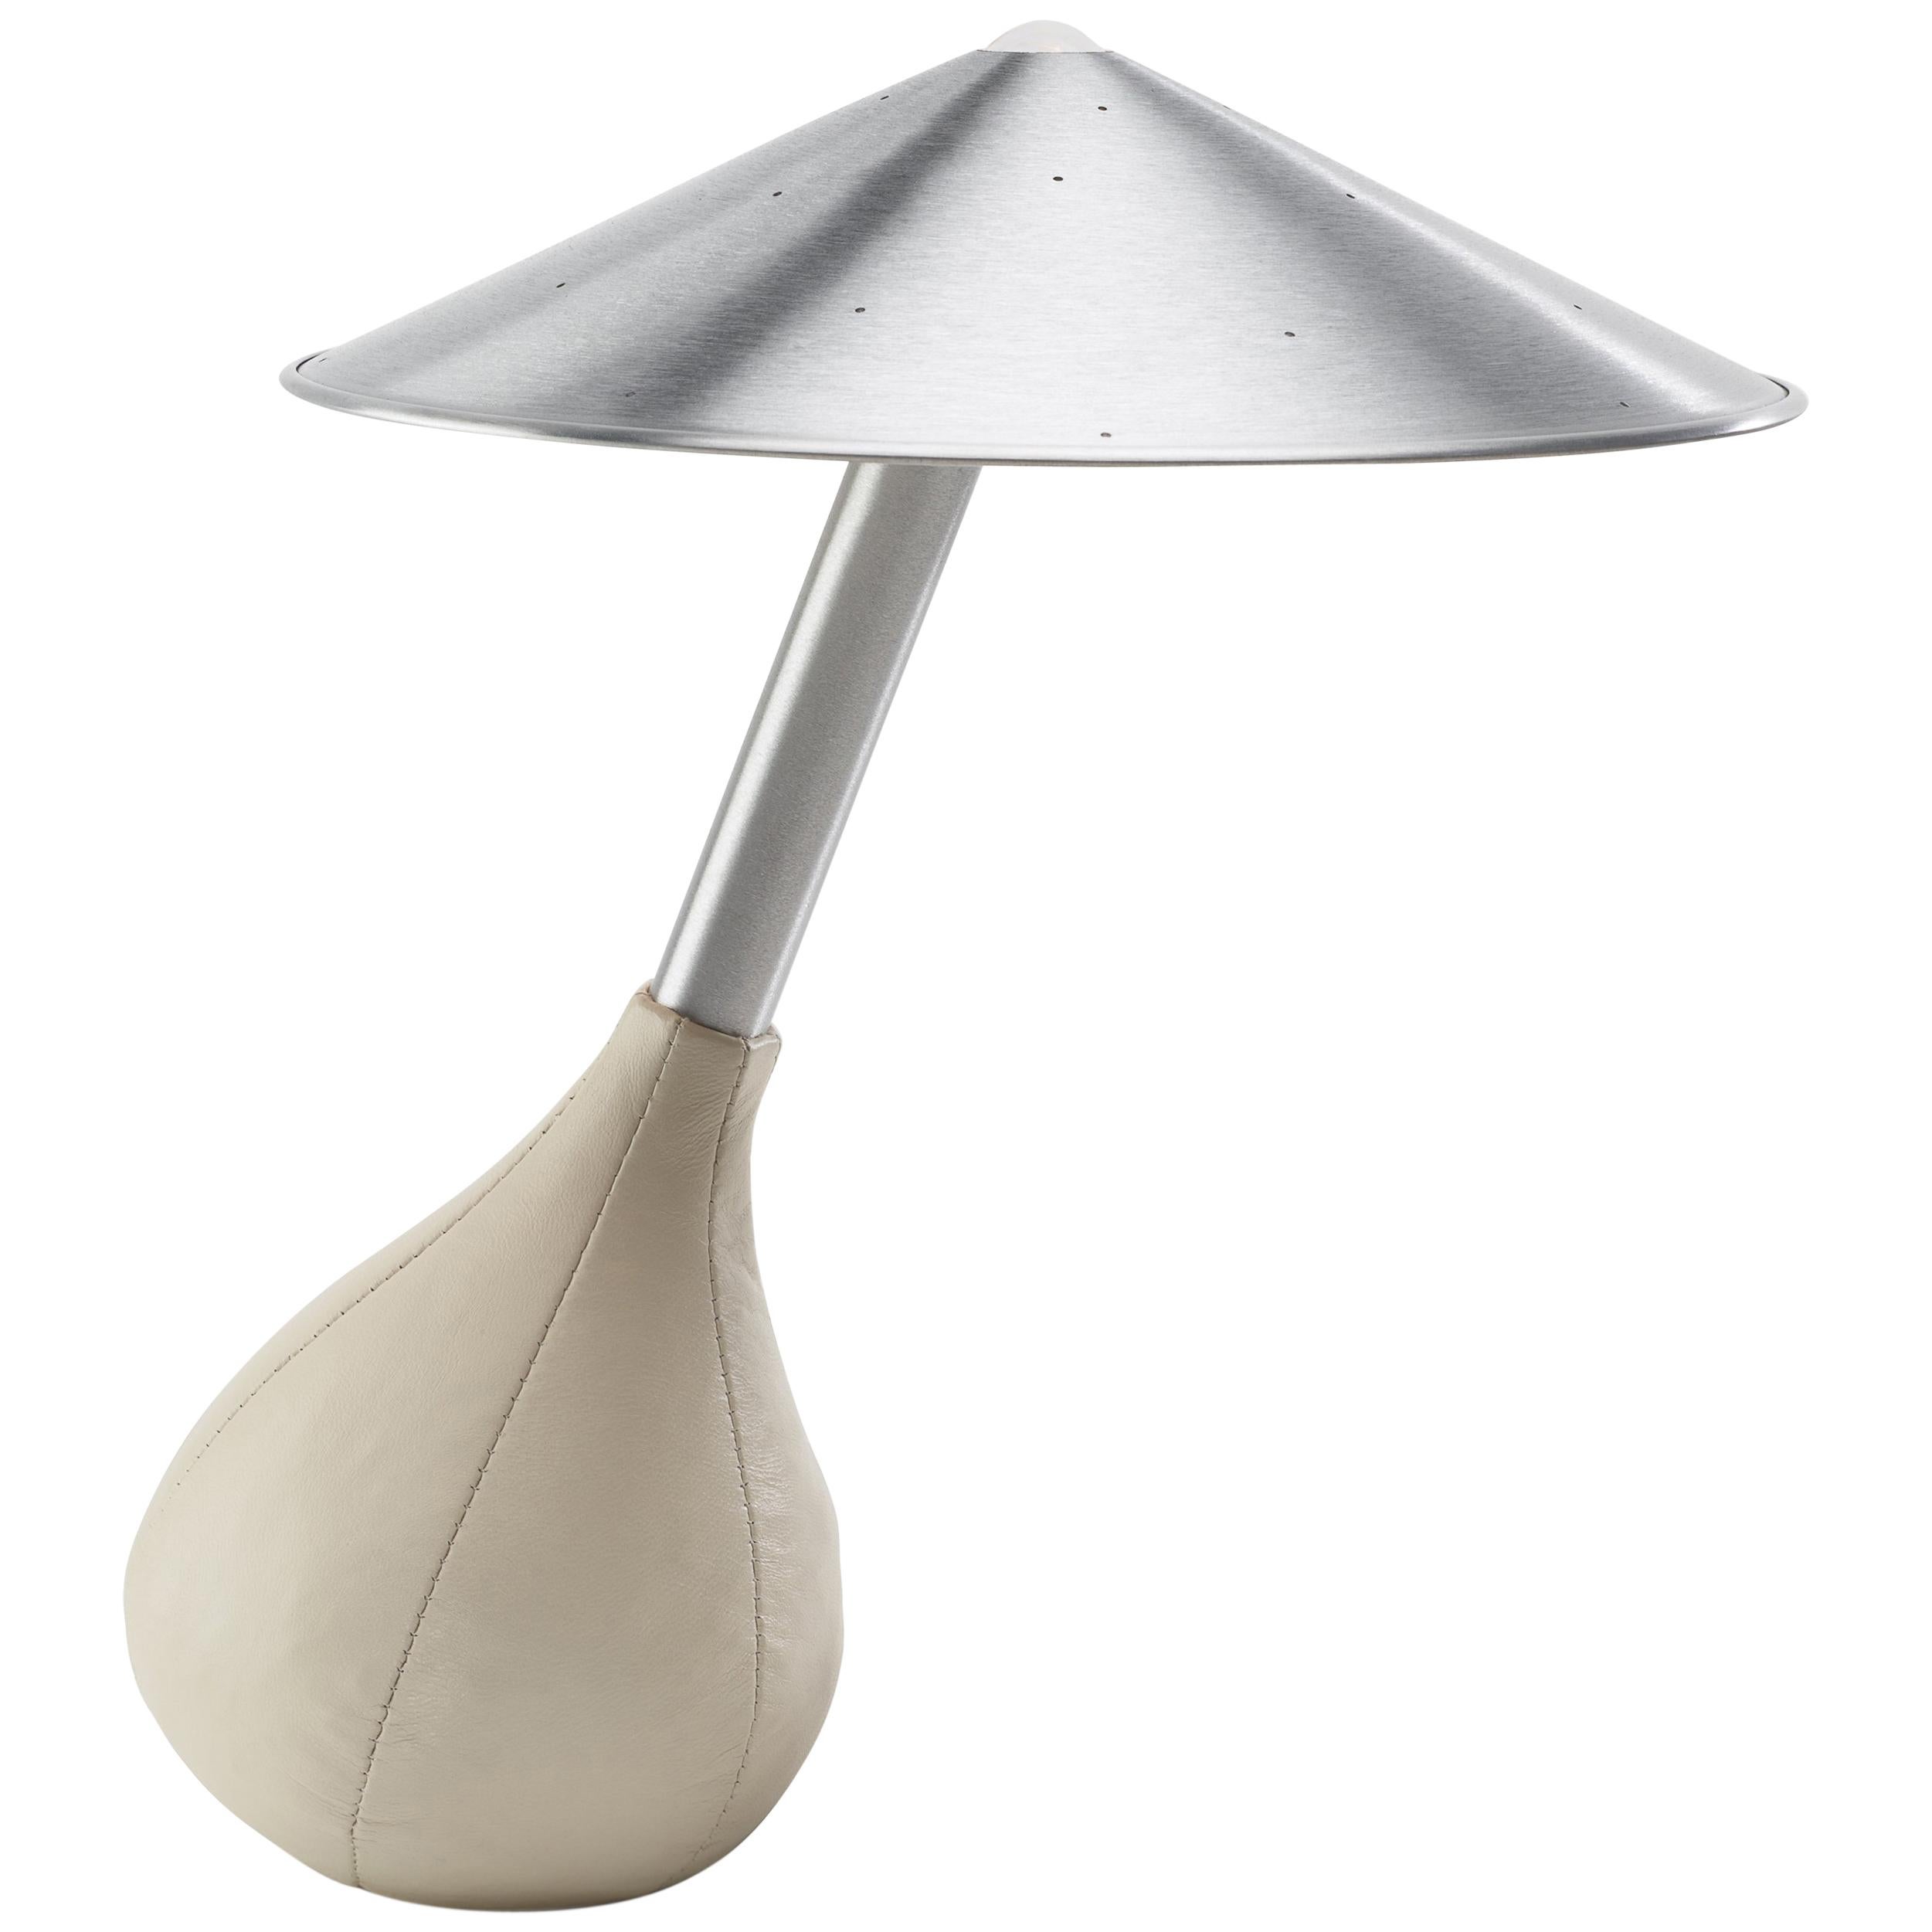 Pablo Designs Table Lamps